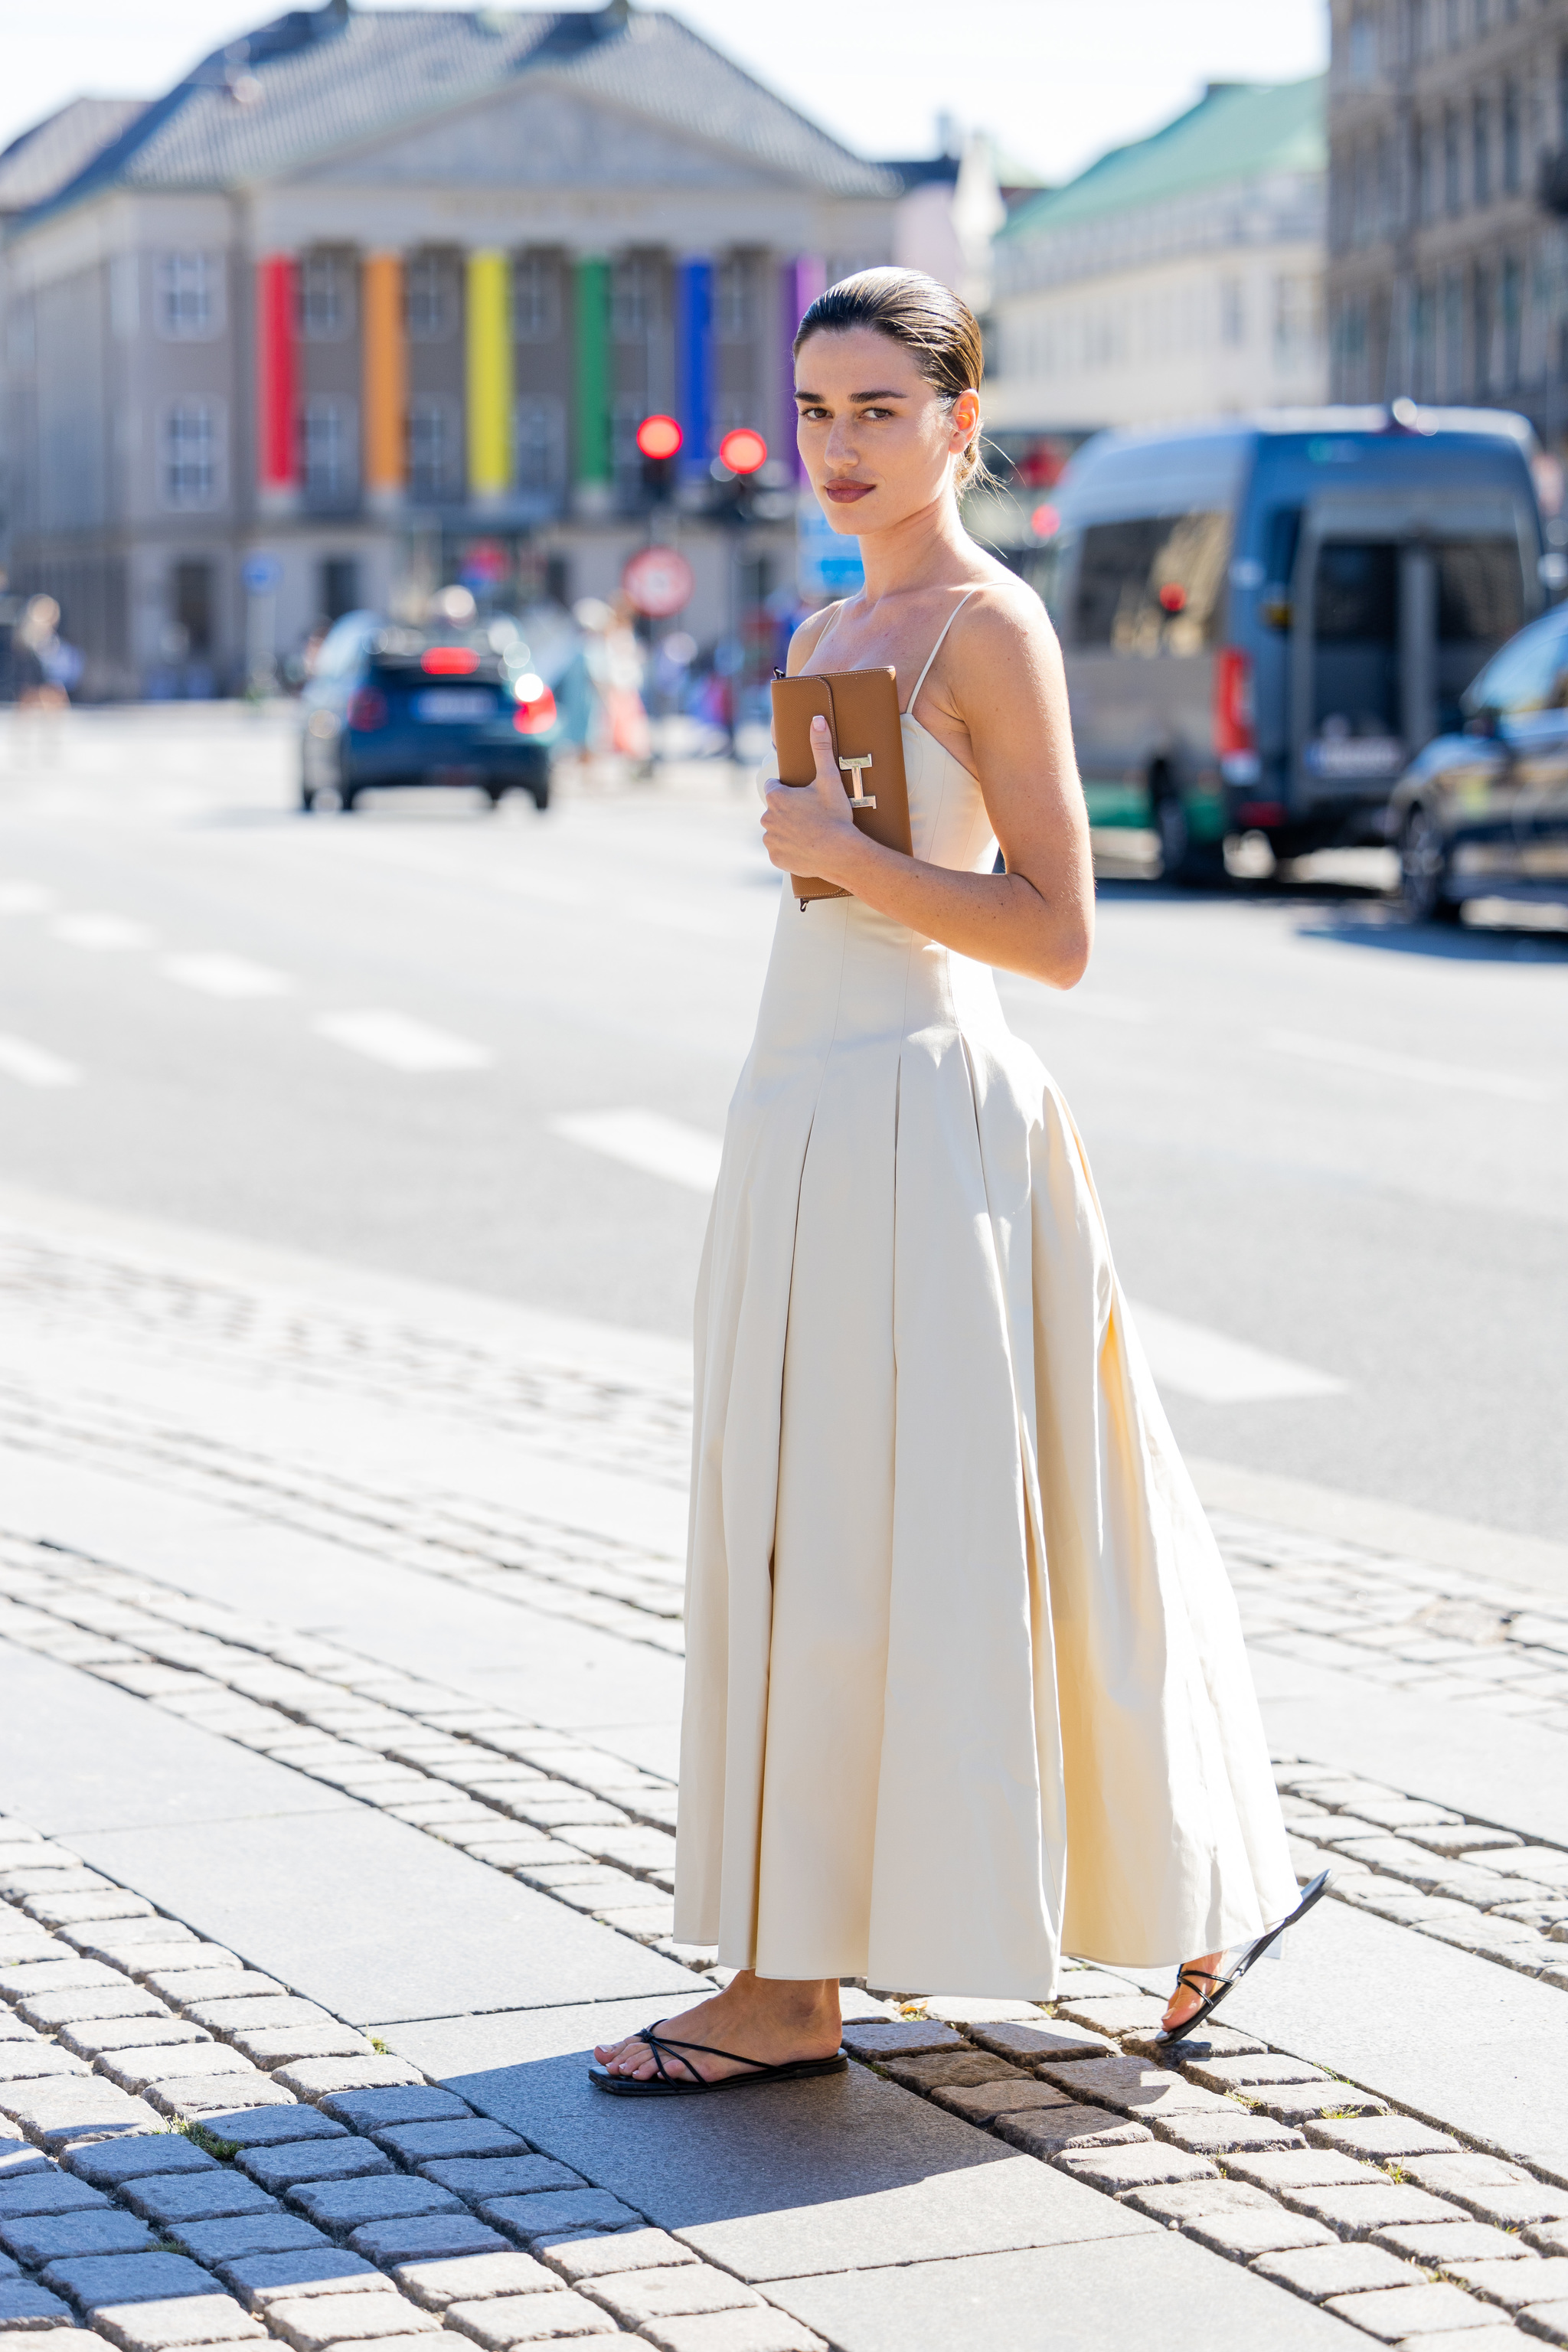 Ilirida Krasniqi con vestido beige y sandalias planas.